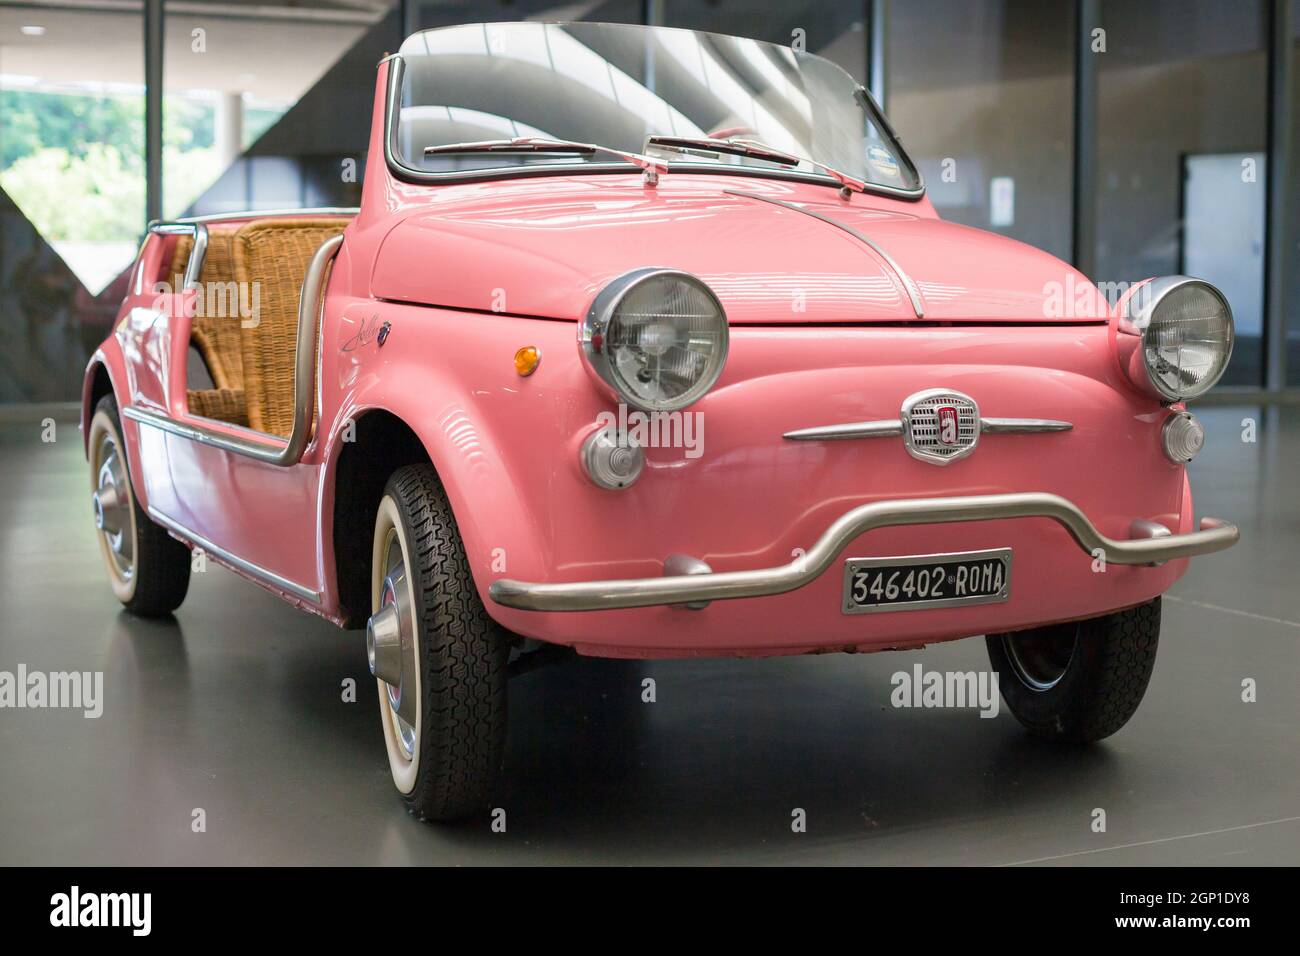 Turin, Italie - 13 août 2021 : Fiat 500 Jolly présentée au Musée national de l'automobile (MAUTO) à Turin, Italie. Banque D'Images